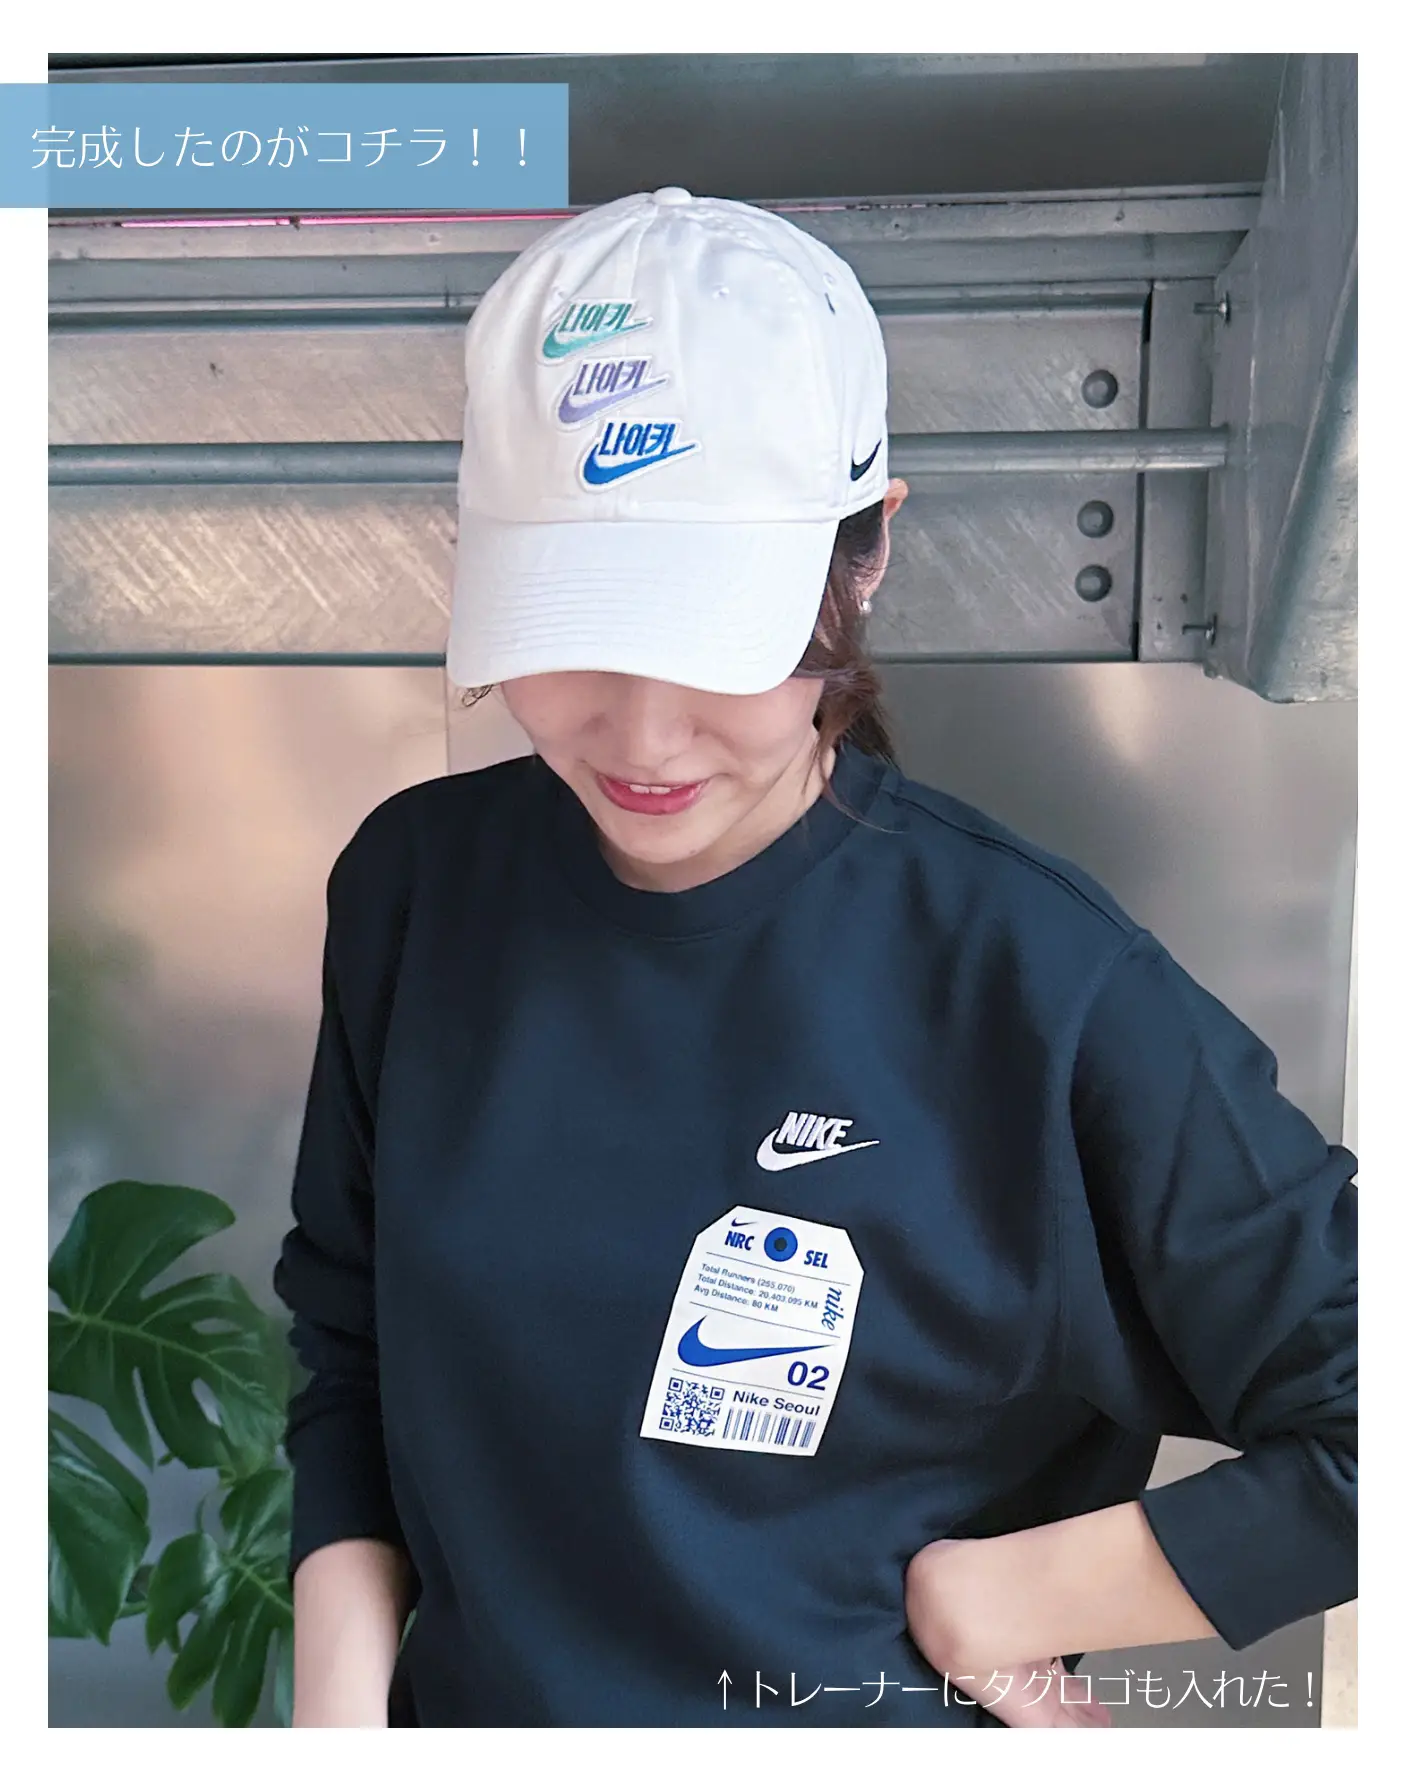 NIKE韓国】ナイキ ソウル キャップ 白 ピンク カスタム オリジナル - 帽子